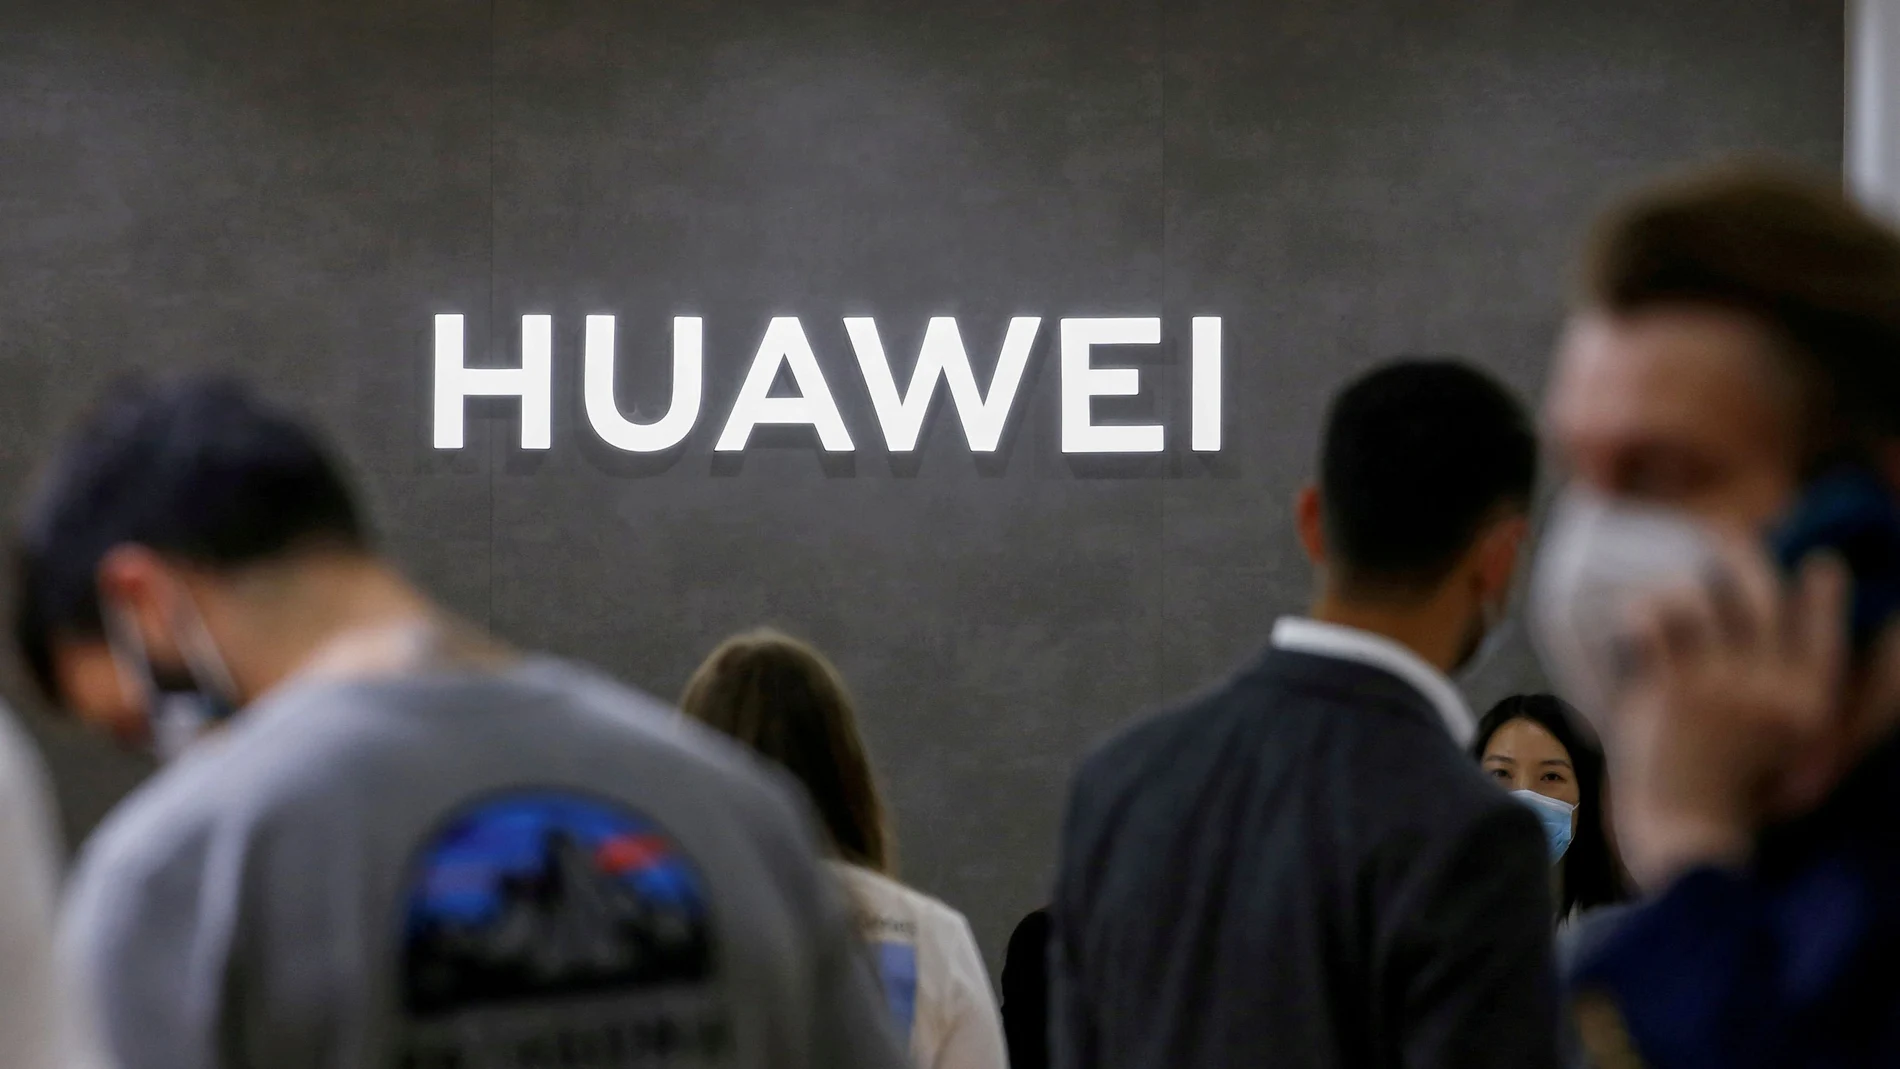 El gádget del sábado: Huawei Mate 50 Pro, el móvil del año de no ser por  Google